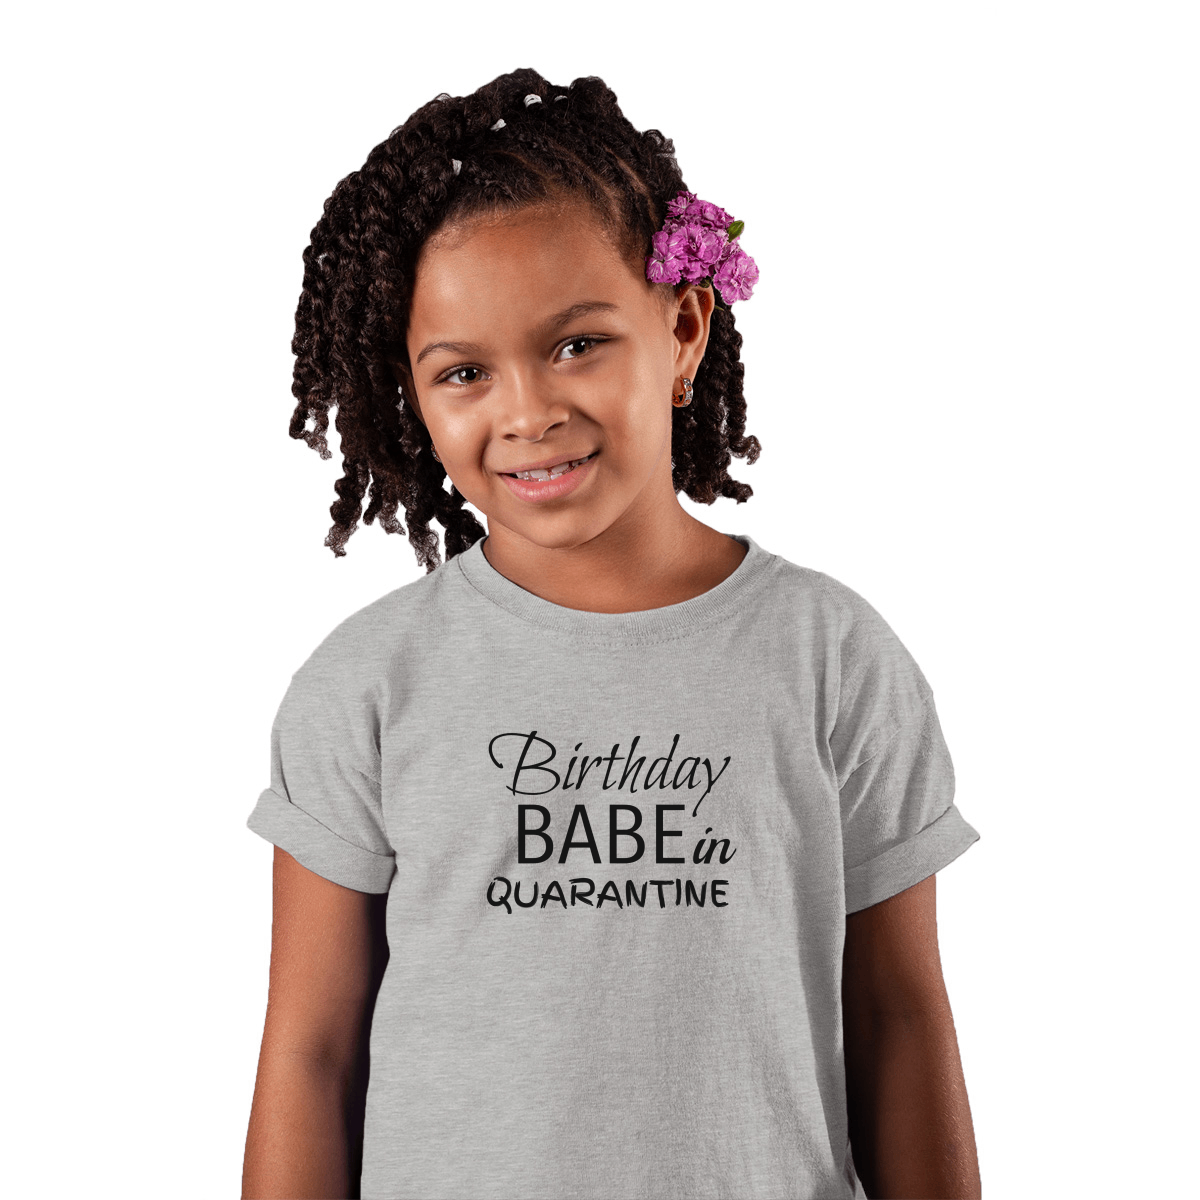 Birthday Babe in Quarantine Kids T-shirt | Gray